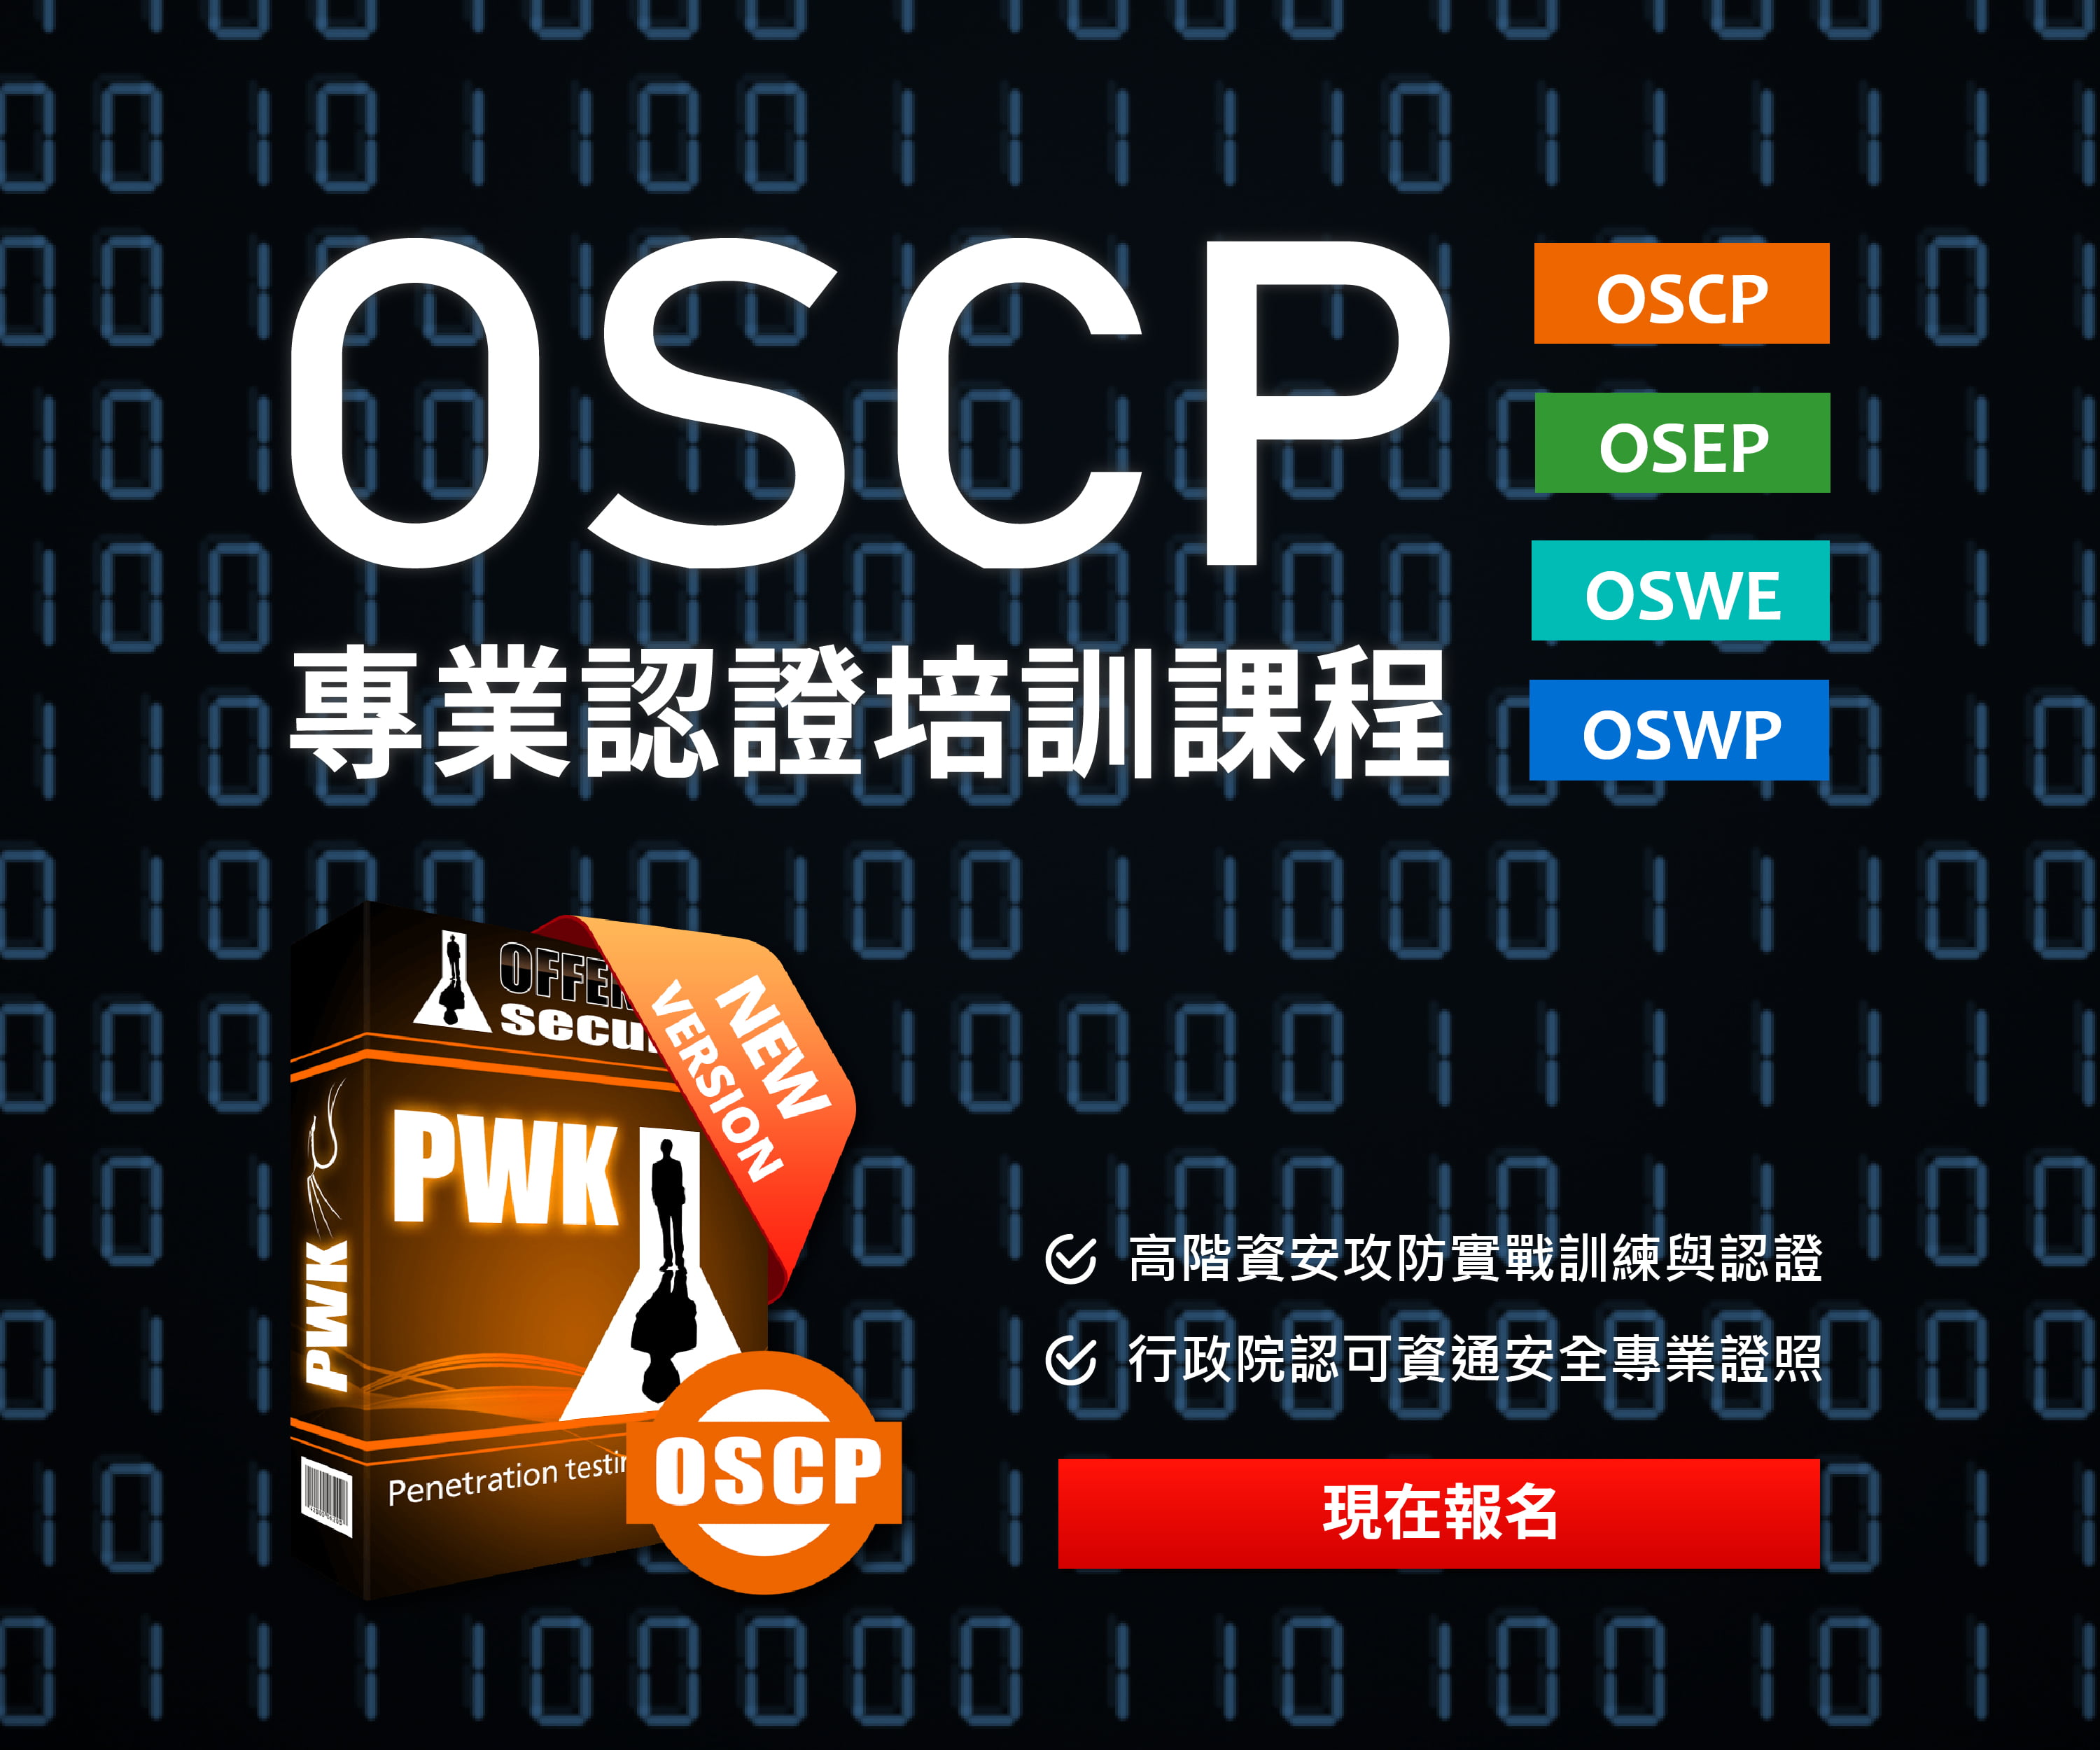 OSCP Course